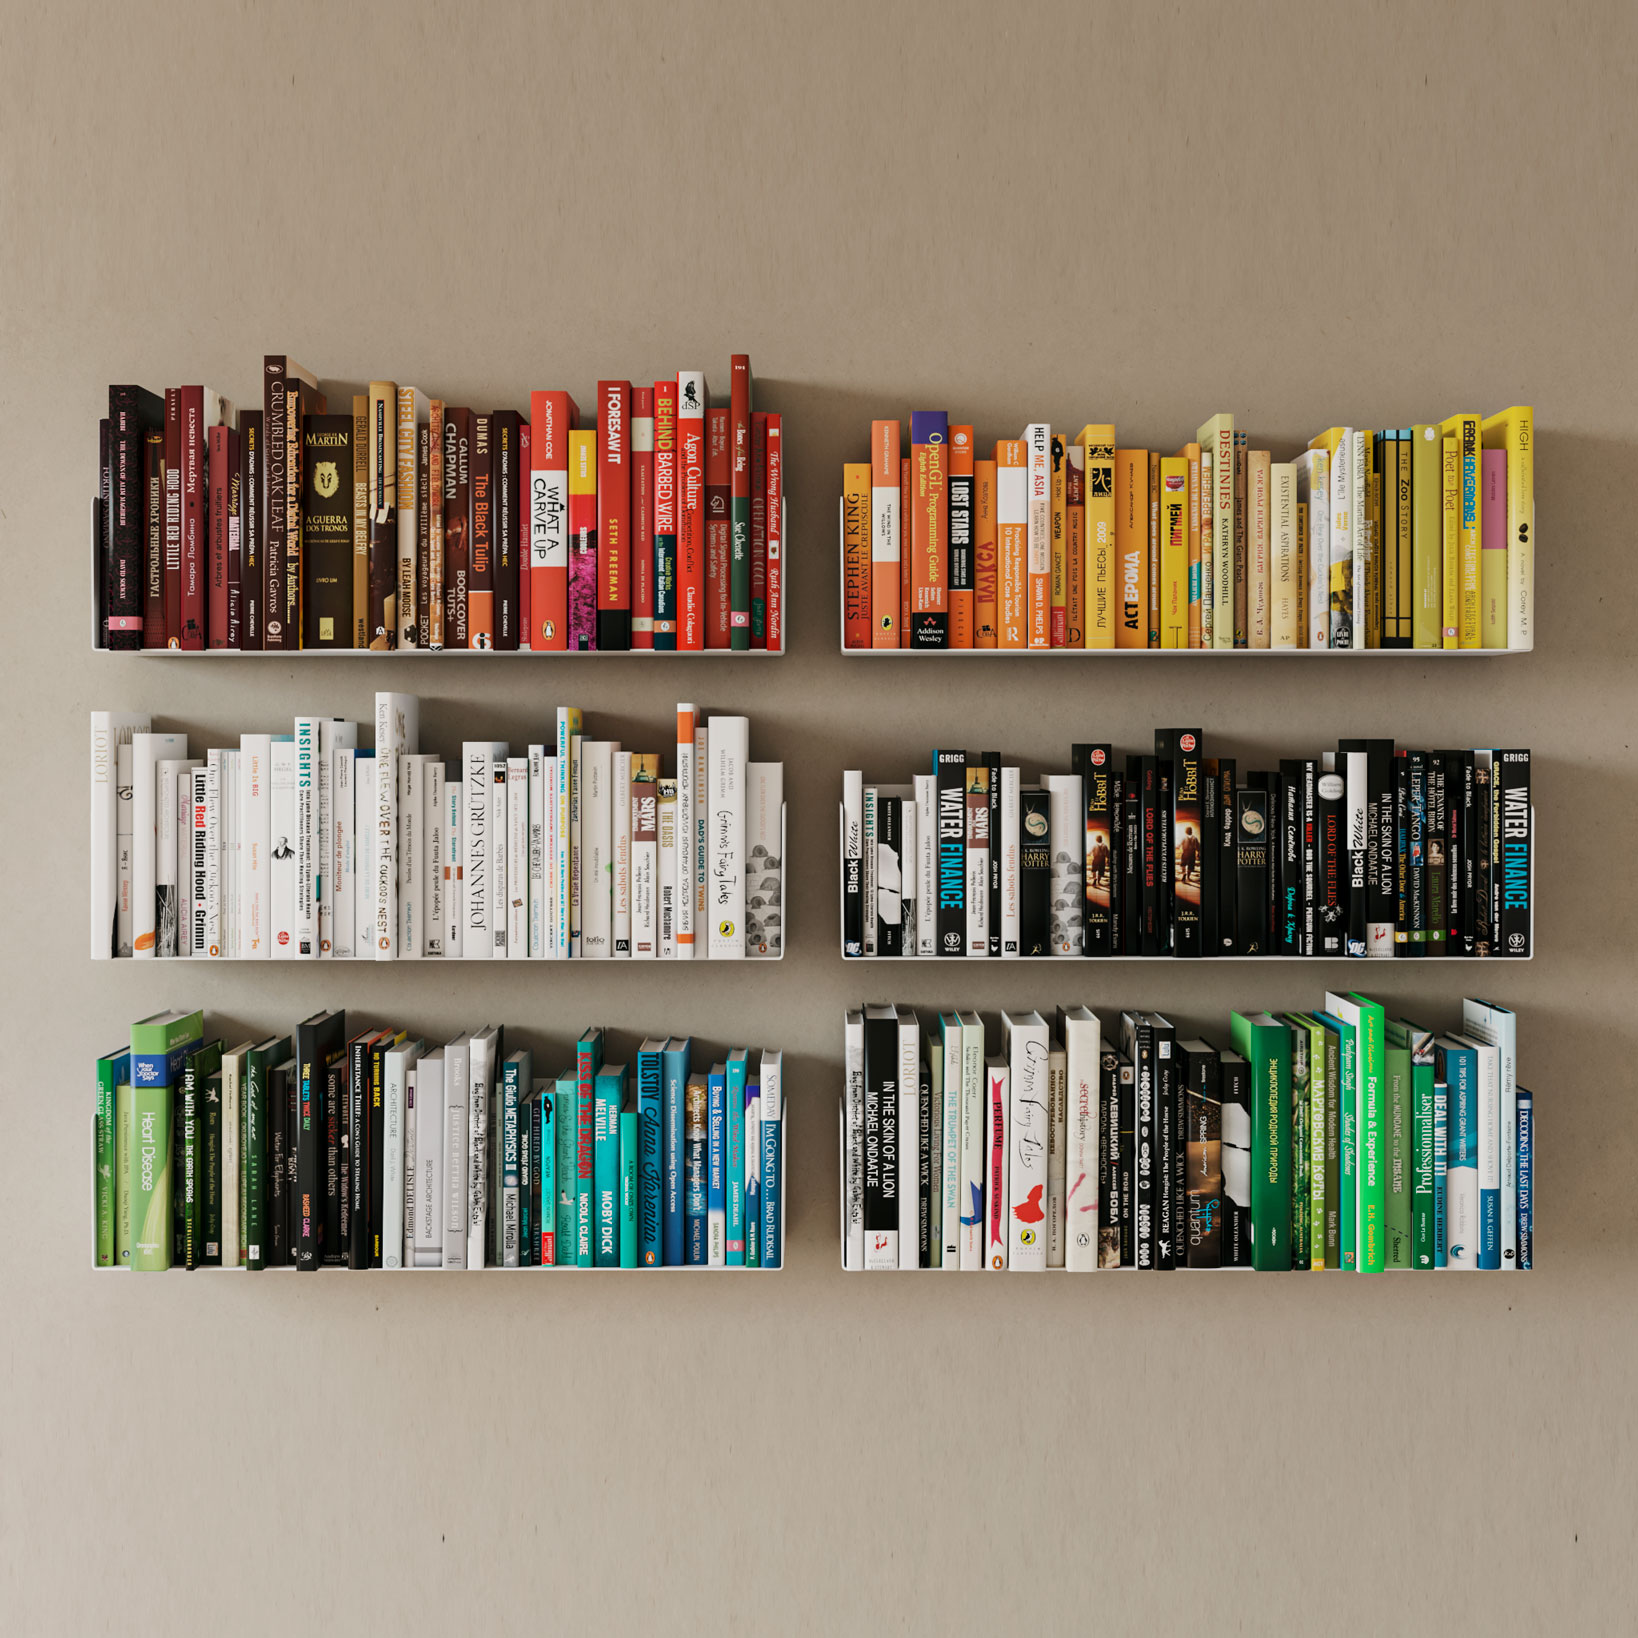 Estanterías para libros que decoran la casa. - Costa Invest Blog